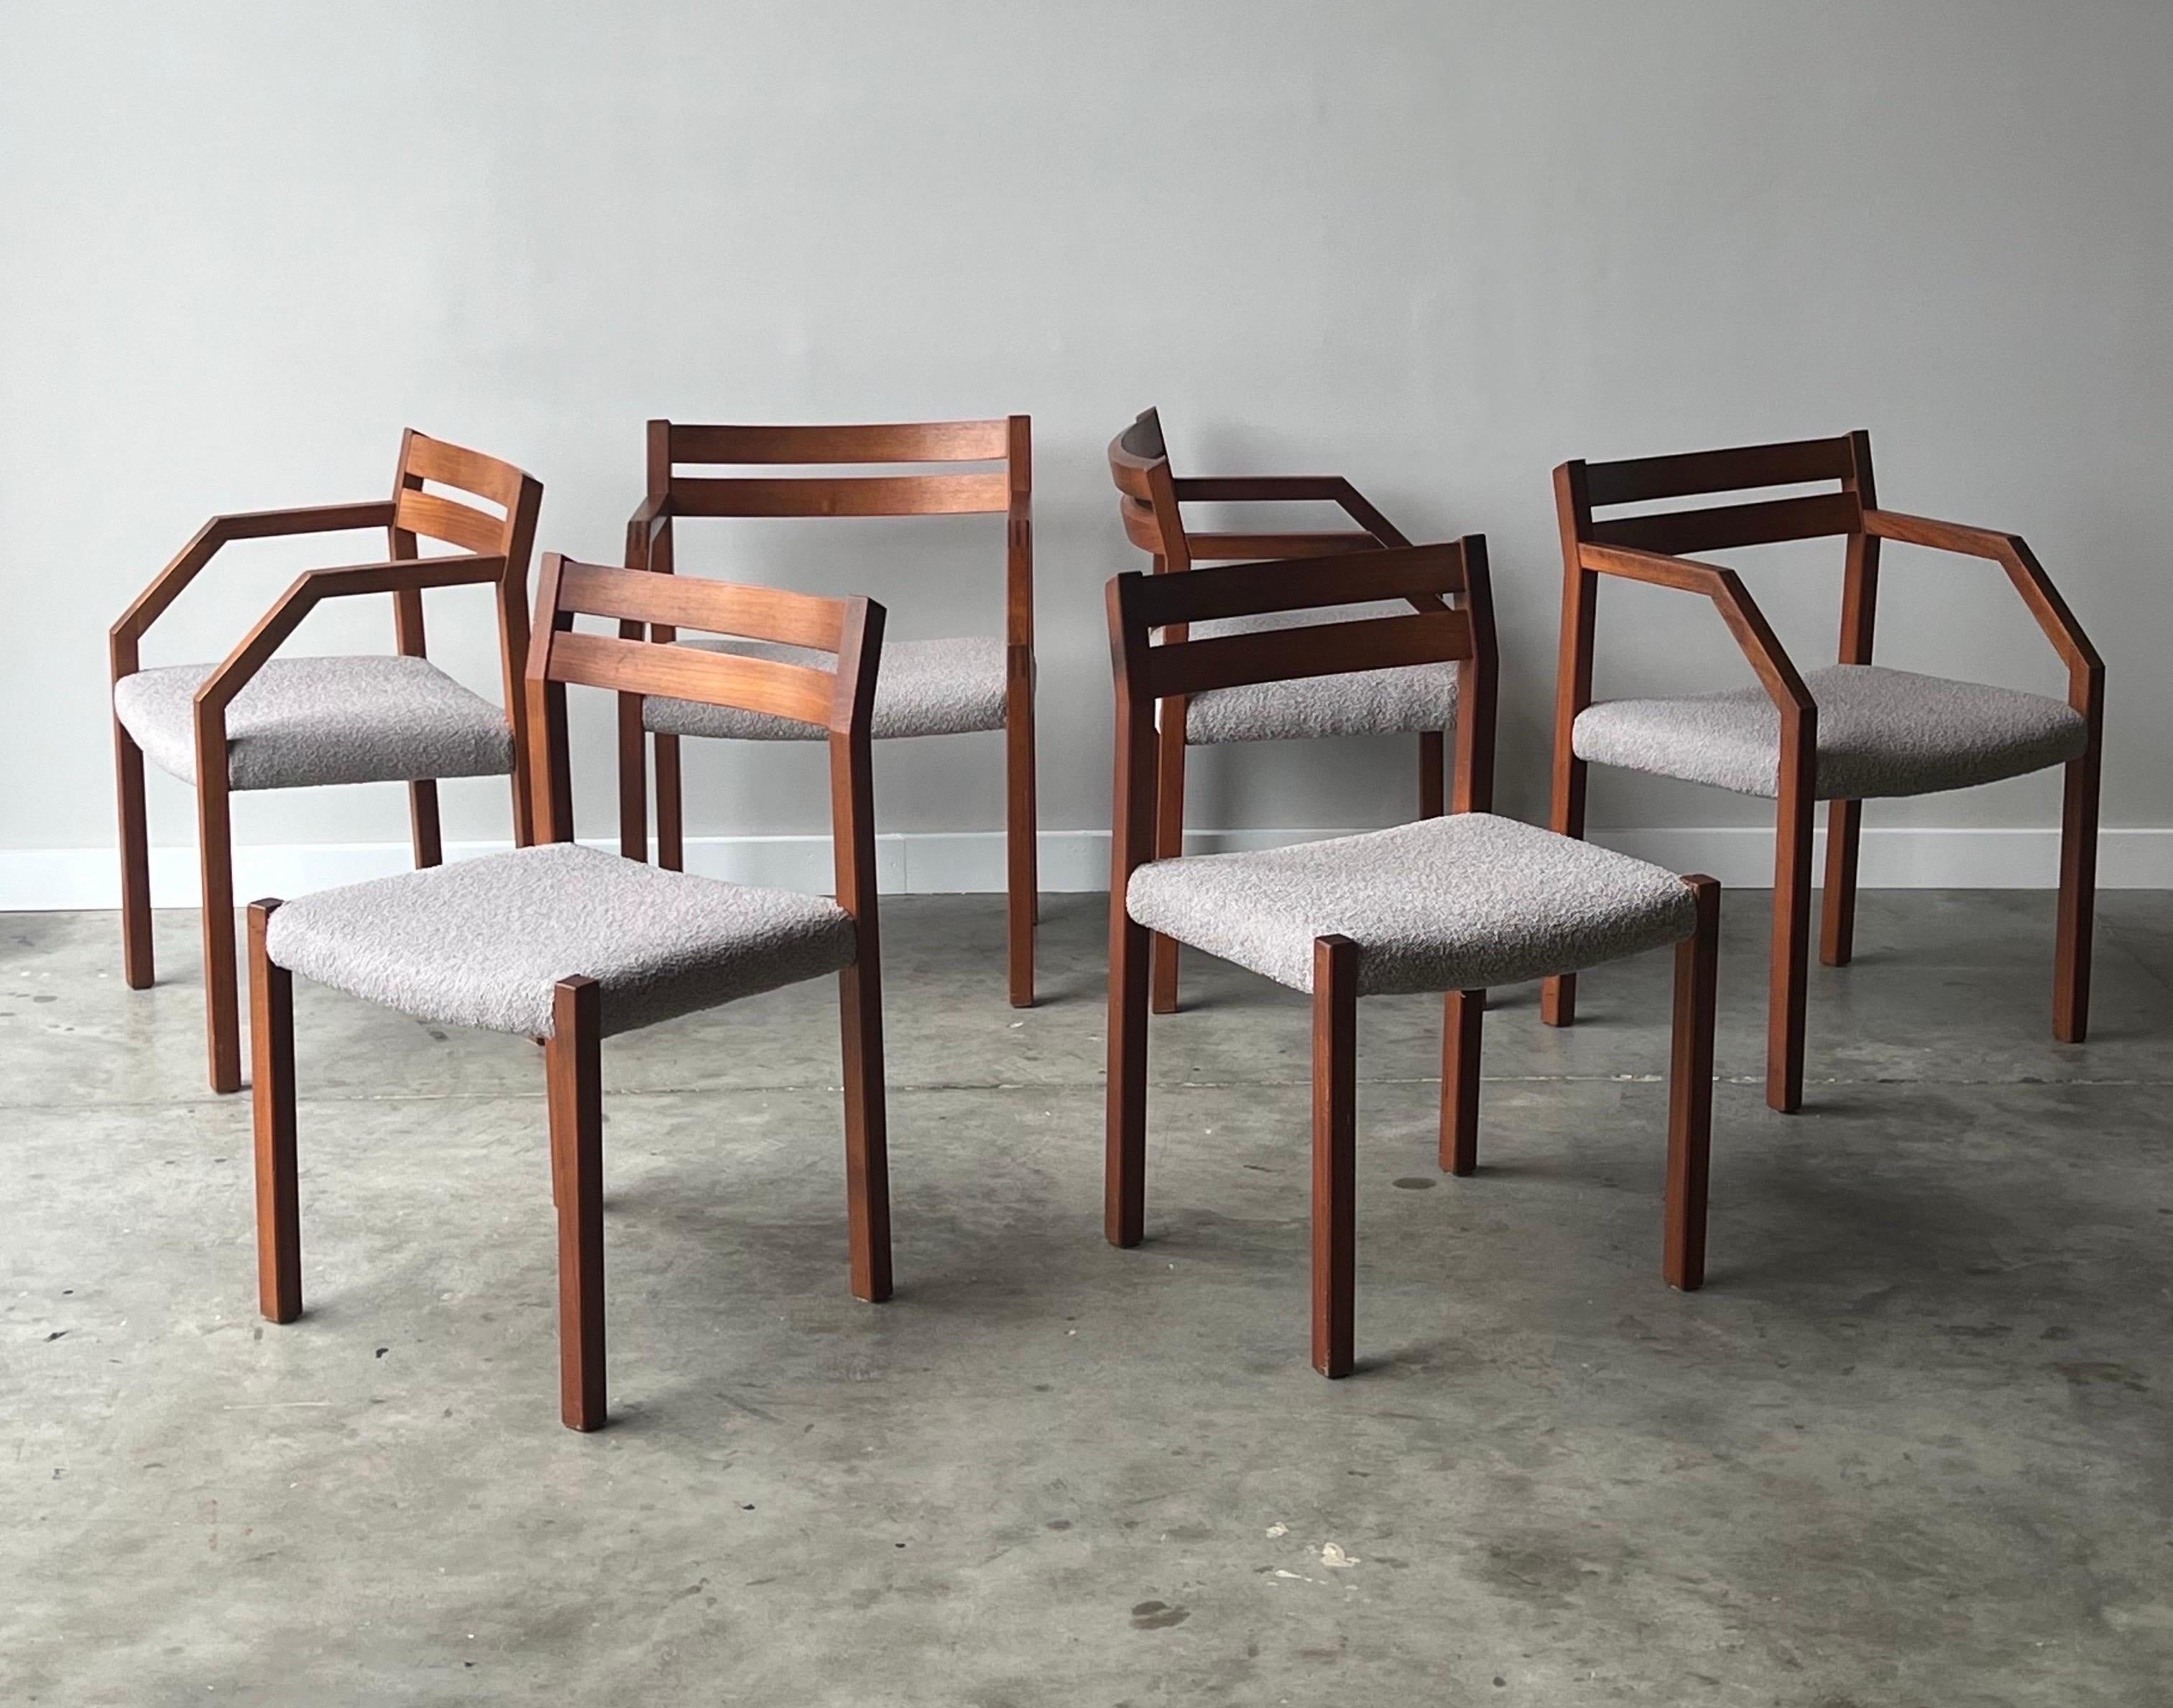 Esstischstühle Modell 401 aus der Mitte des Jahrhunderts, entworfen von Niels Otto Møller für J.L. Møller, Dänemark. Das Set aus sechs Stühlen besteht aus vier Sesseln und zwei Stühlen ohne Armlehnen. Die Stühle des Modells 401 sind aus gemeißeltem